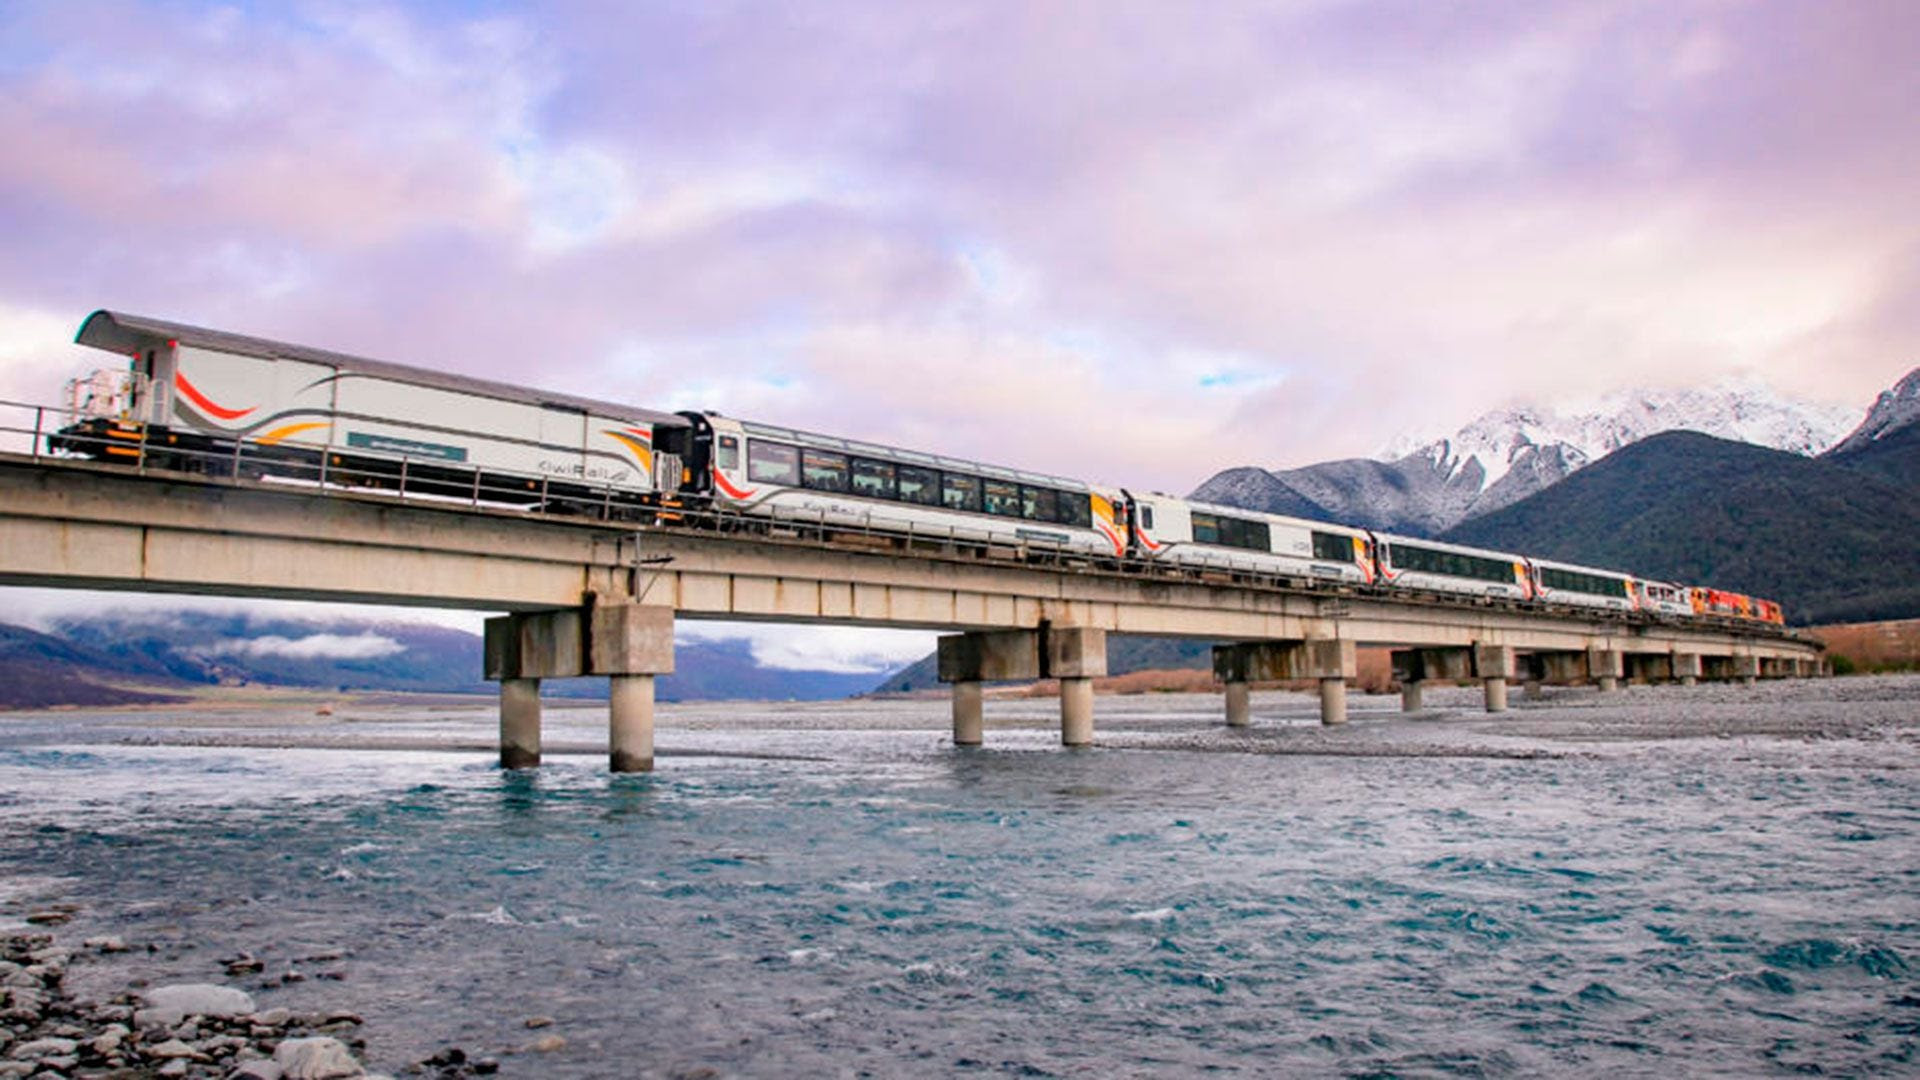 El viaje en tren TranzAlpine está considerado uno de los viajes más asombrosos  y espectaculares del mundo en tren